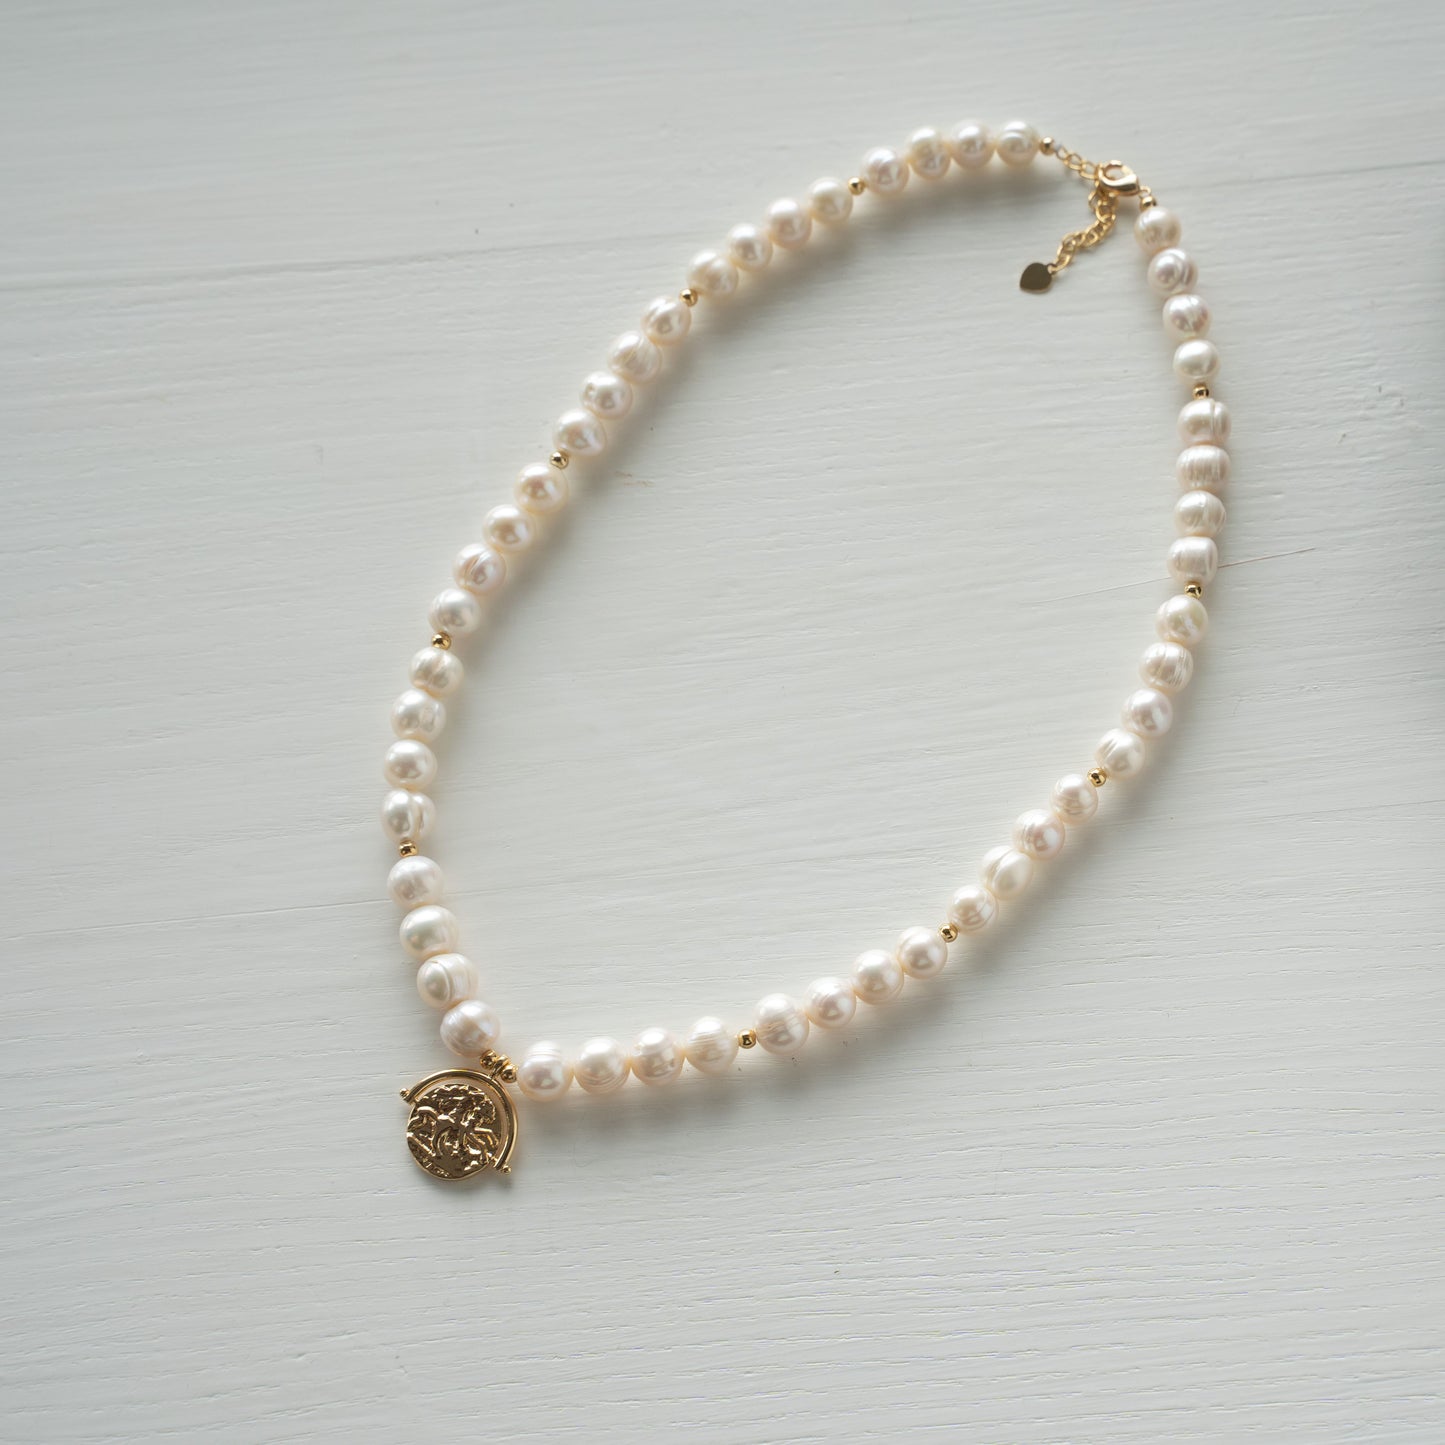 Natūralių perlų vėrinys su auksu dengtomis detalėmis "Mia"